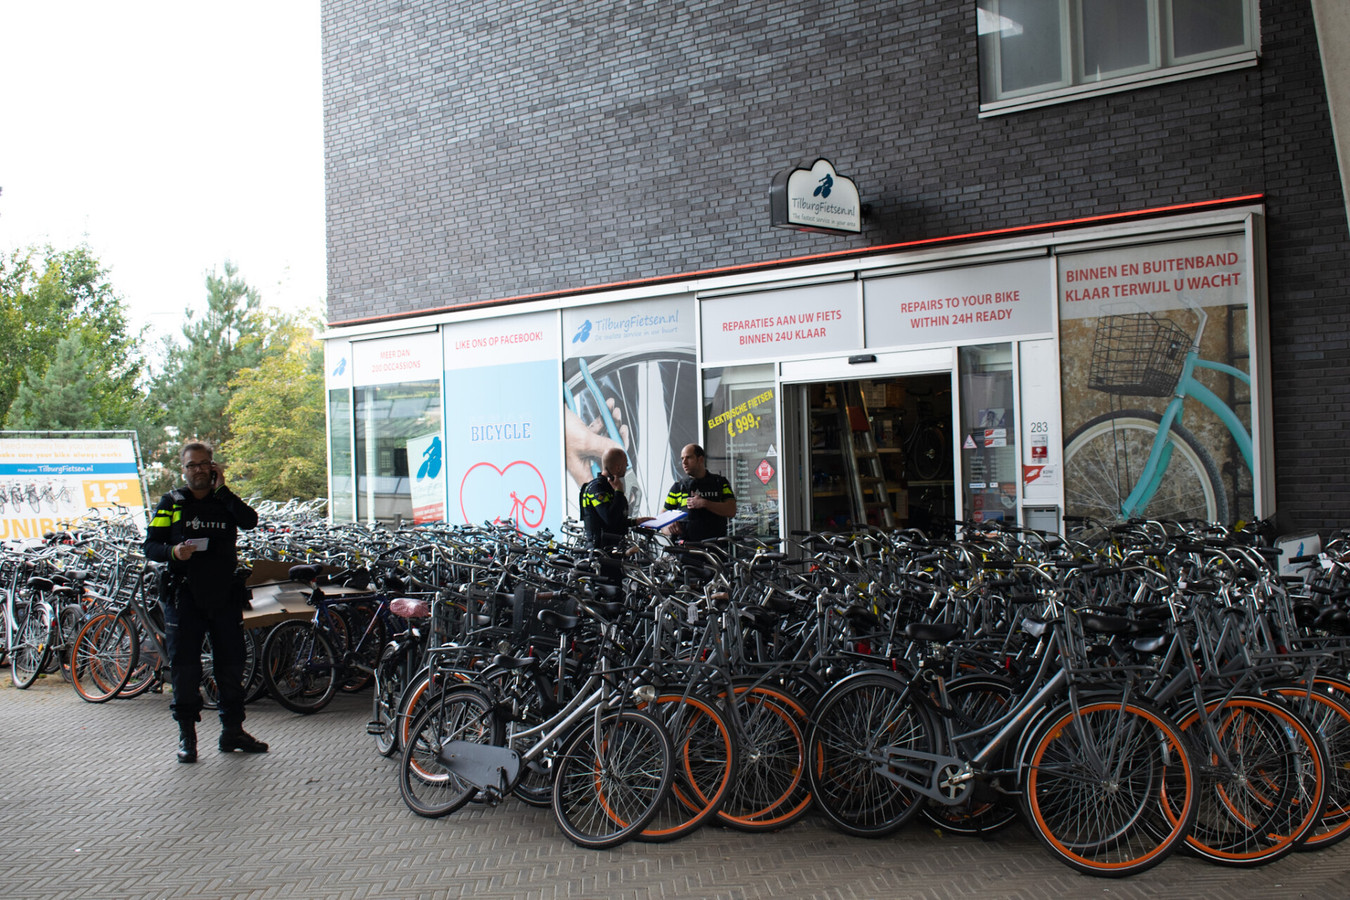 Veraangenamen Reorganiseren Ineenstorting Drie mannen aangehouden na een conflict bij een fietsenwinkel in Tilburg |  Foto | bd.nl